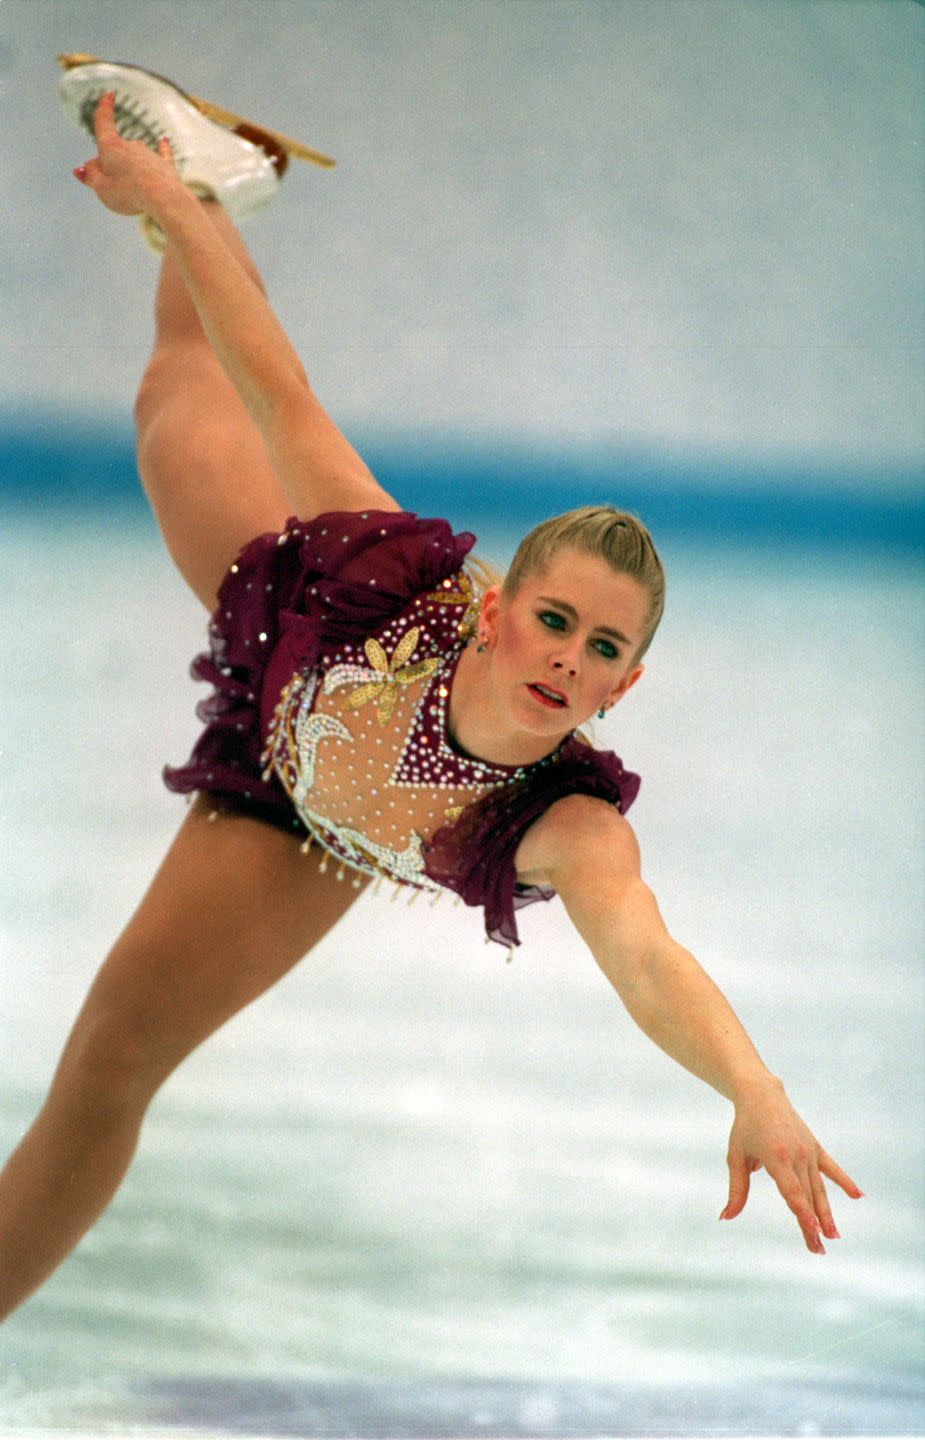 1994 Winter Olympics in Lillehammer